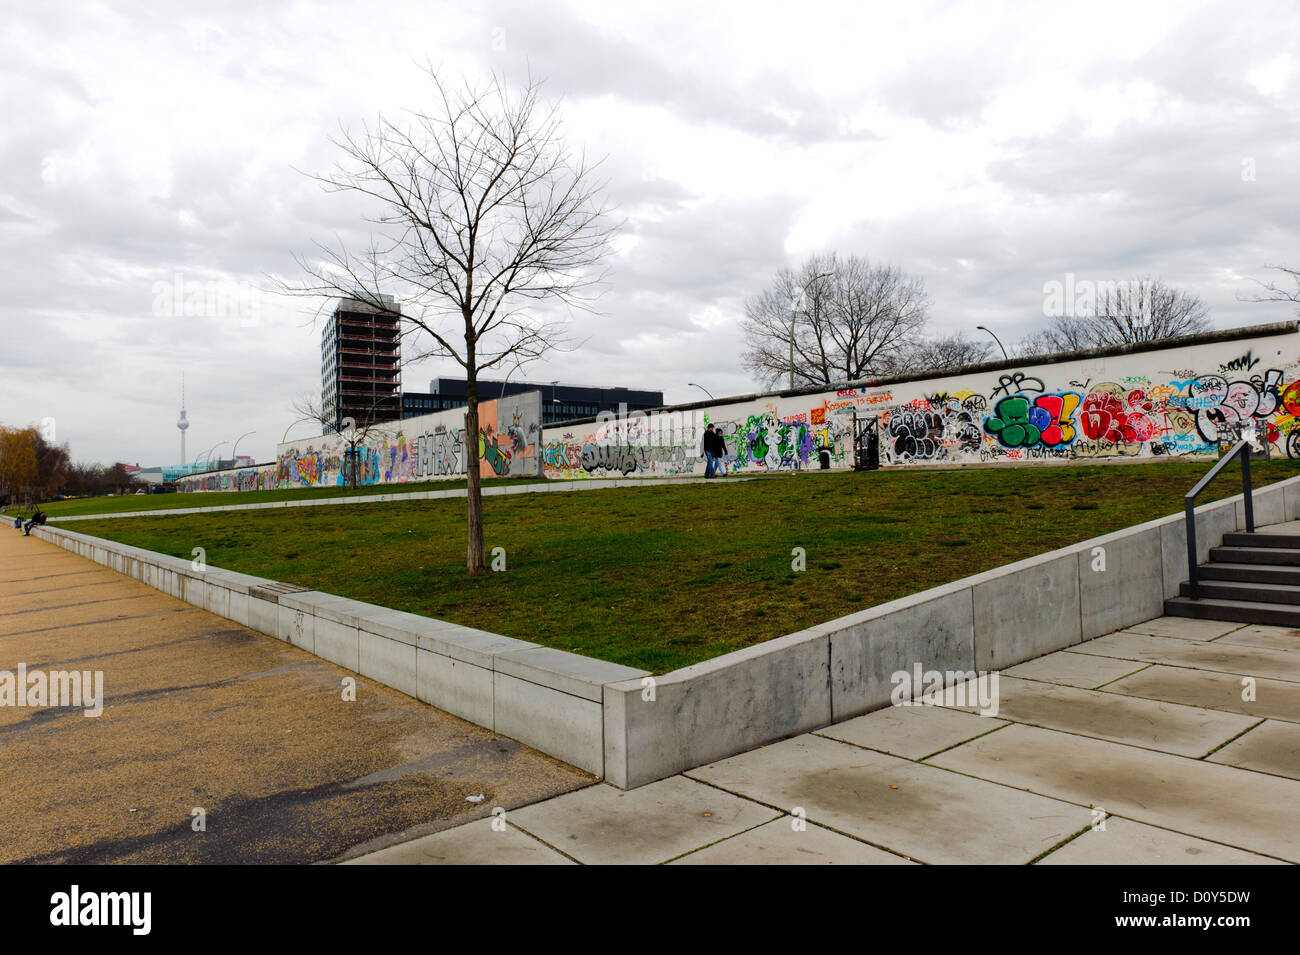 Berlin Wall, Germany Stock Photo